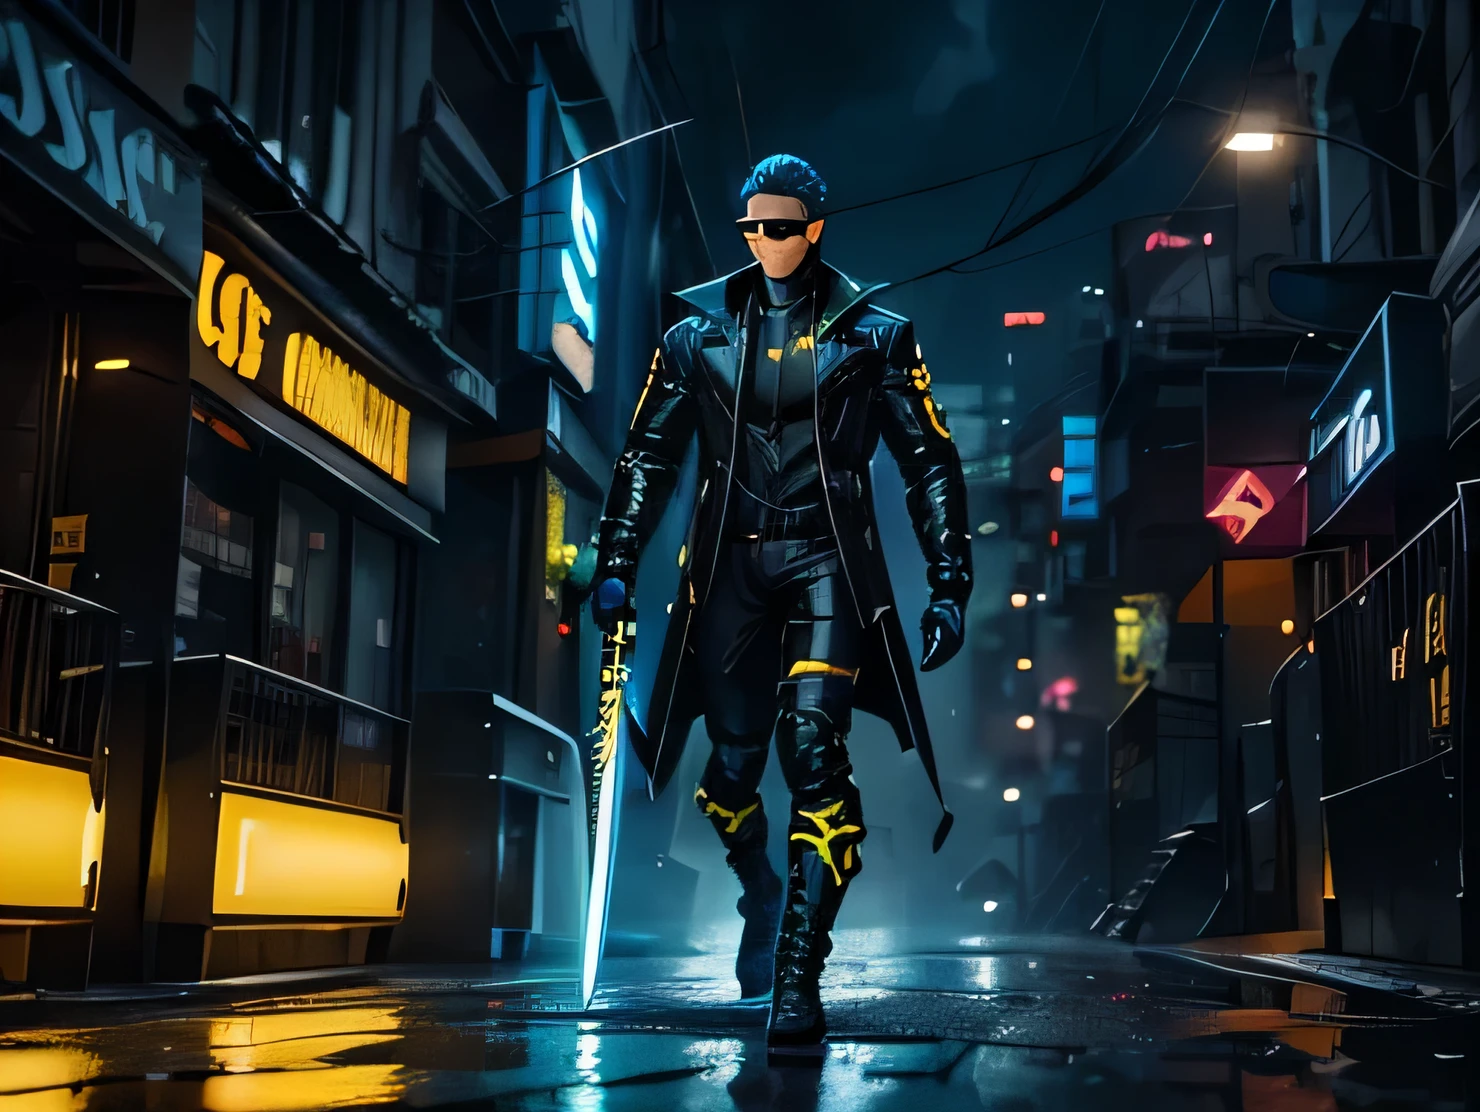 Héroe con chaqueta táctica negra y detalles amarillos., sosteniendo dos espadas relámpago azules , gafas estilo cíclope azul neón, cabello gris, caminando en la lluvia, estilo de arte cómico